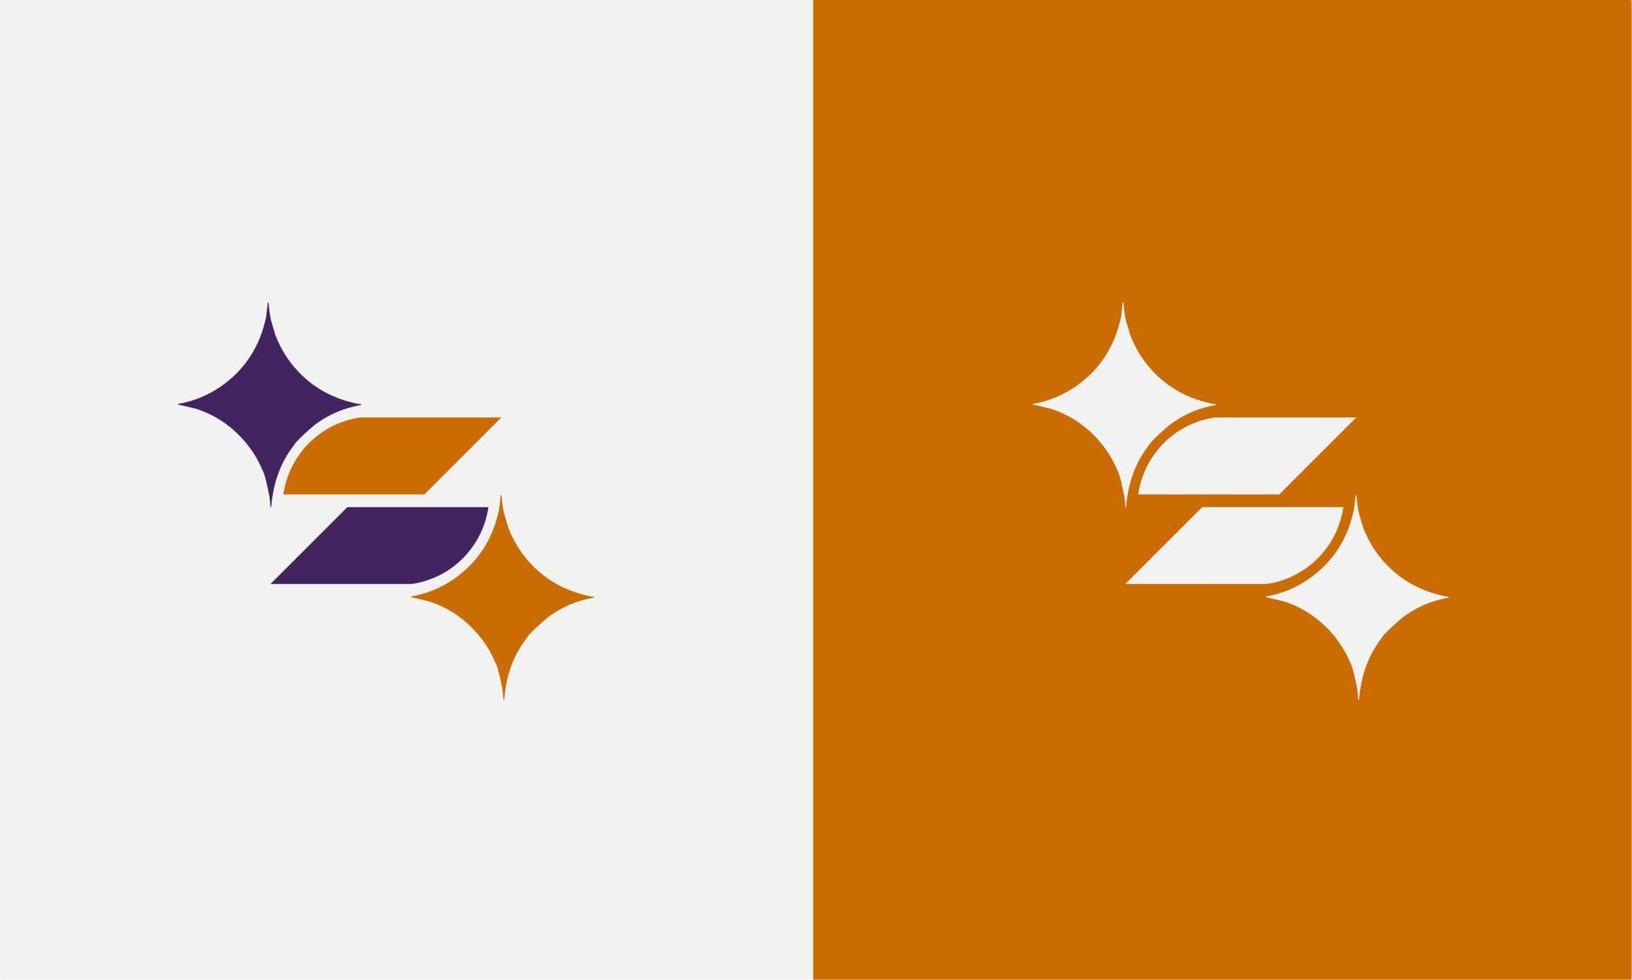 eerste s brief logo ontwerp met ster vorm vector illustratie. brief s ster vorm geïsoleerd met twee achtergronden.